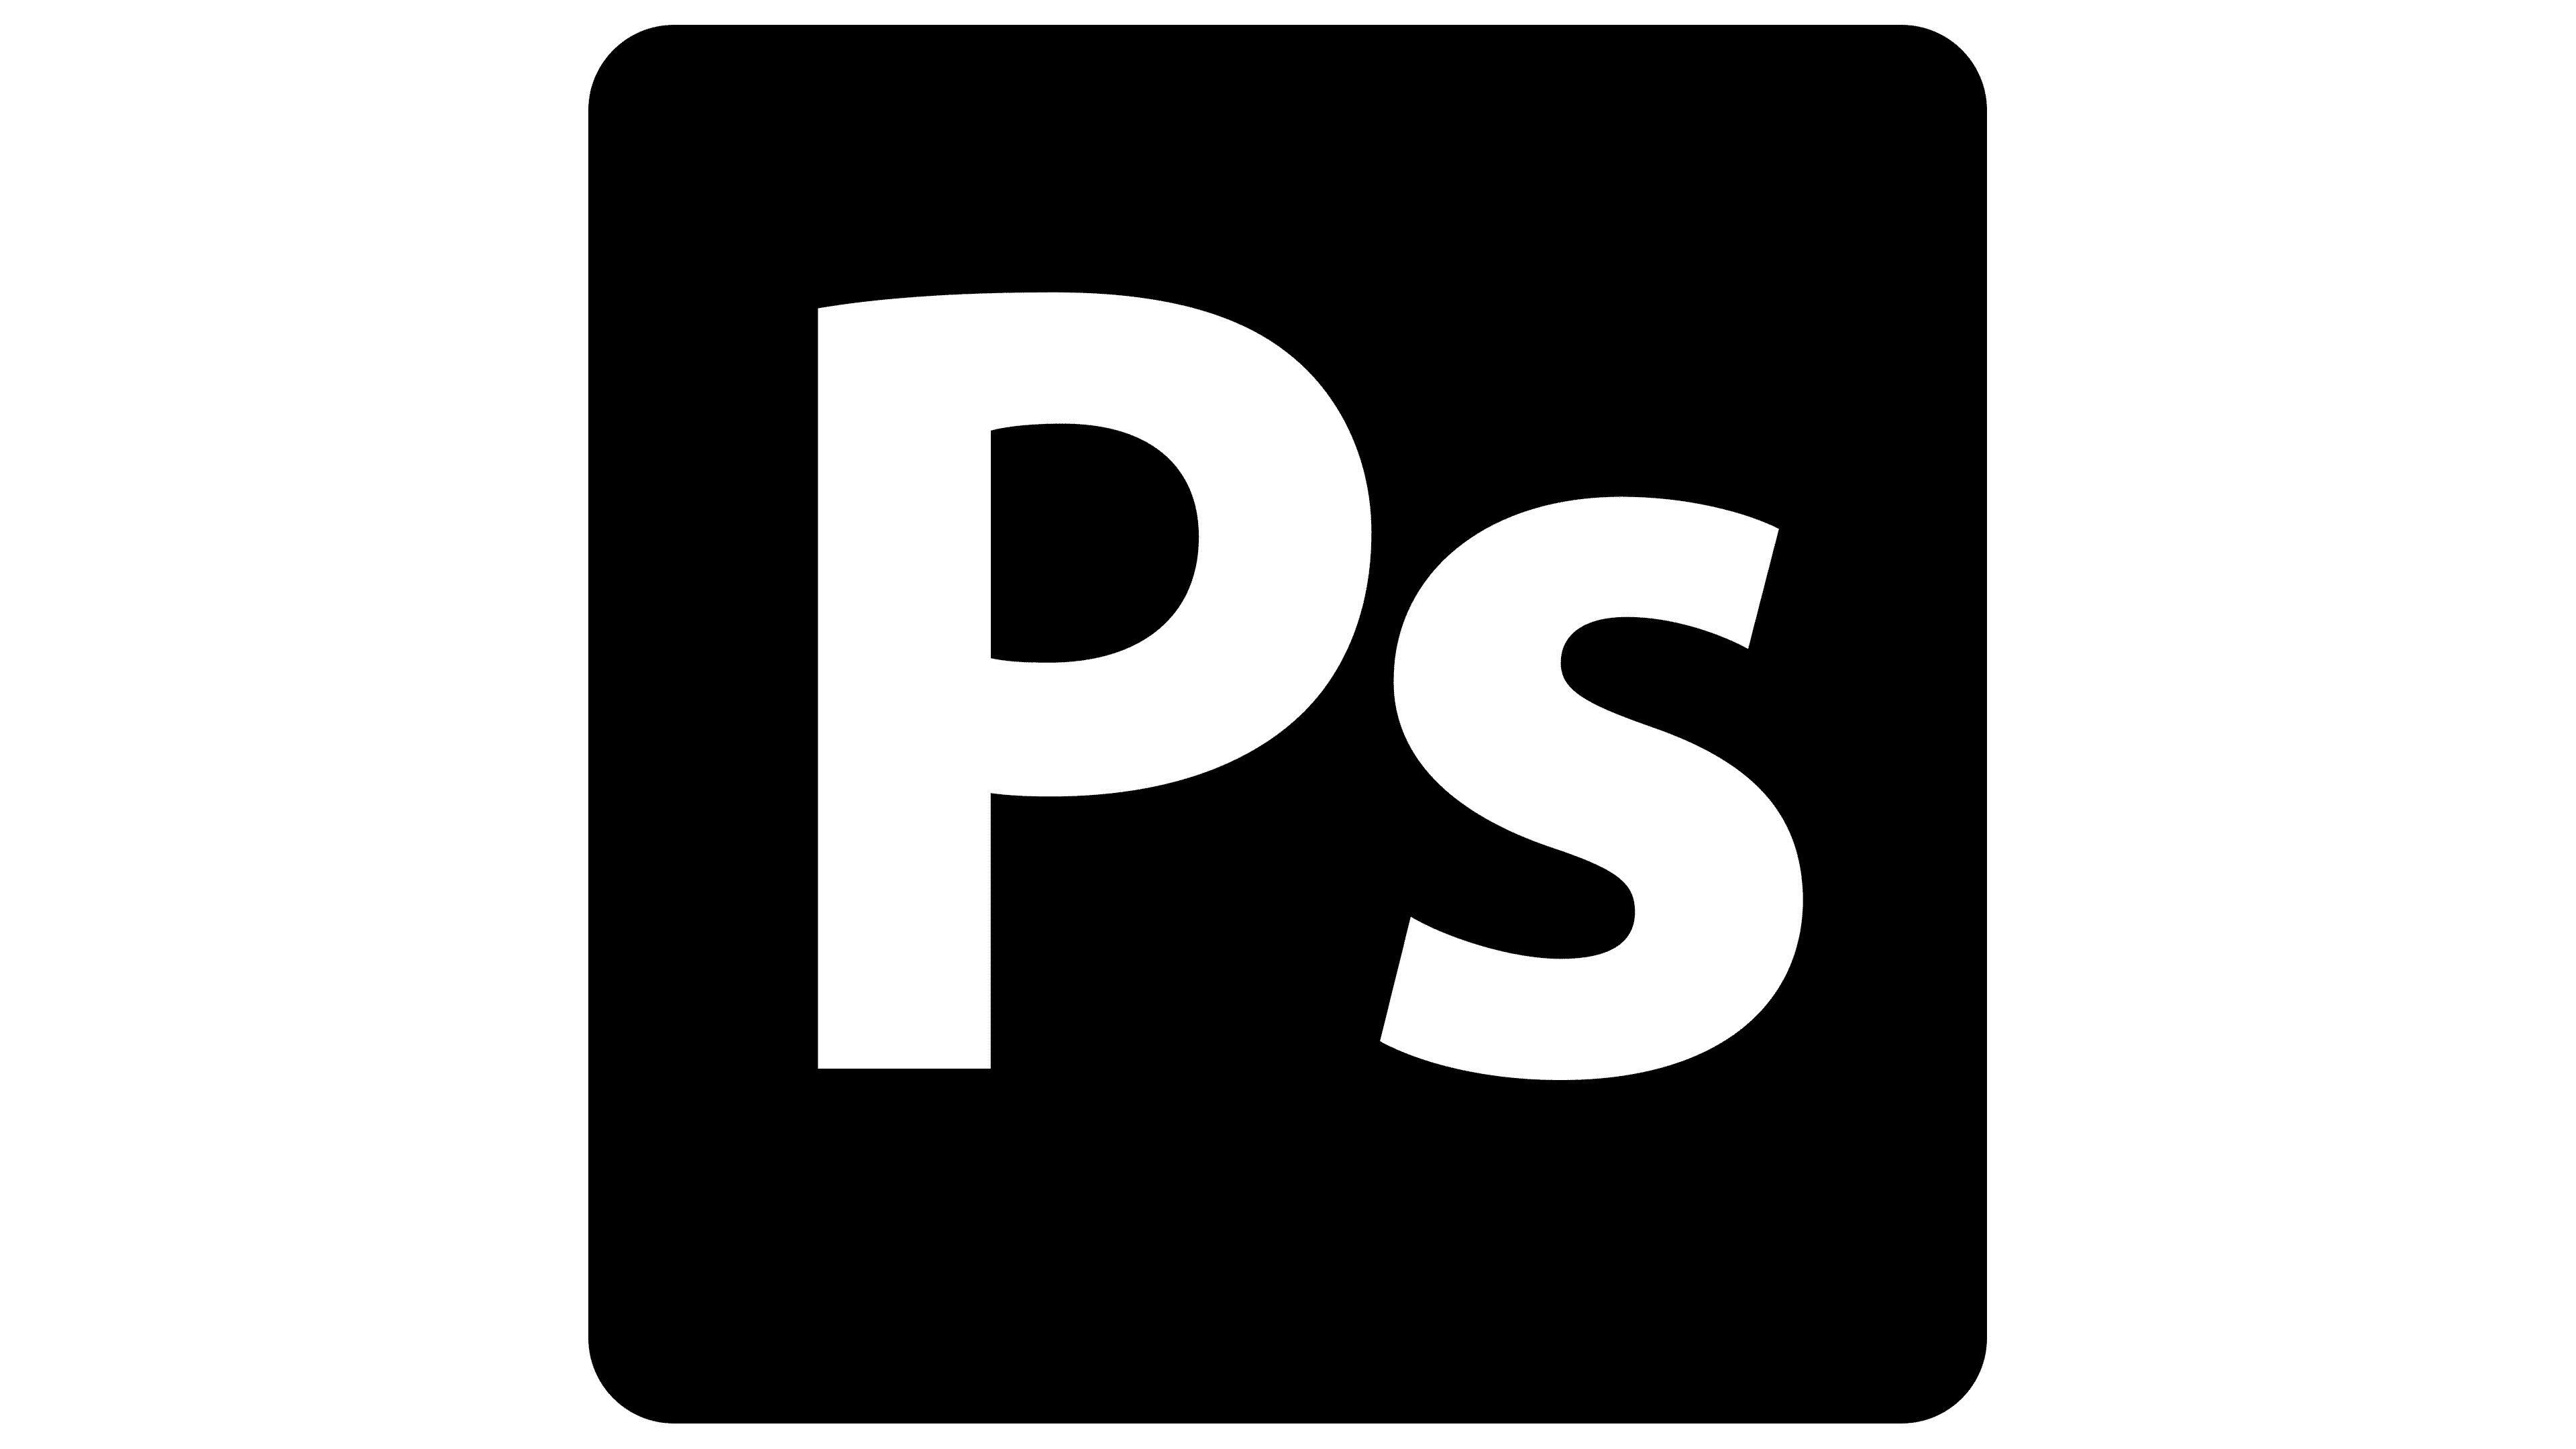 Logo Ig PNG, Logo Instagram Icon Free DOWNLOAD - Free Transparent PNG Logos